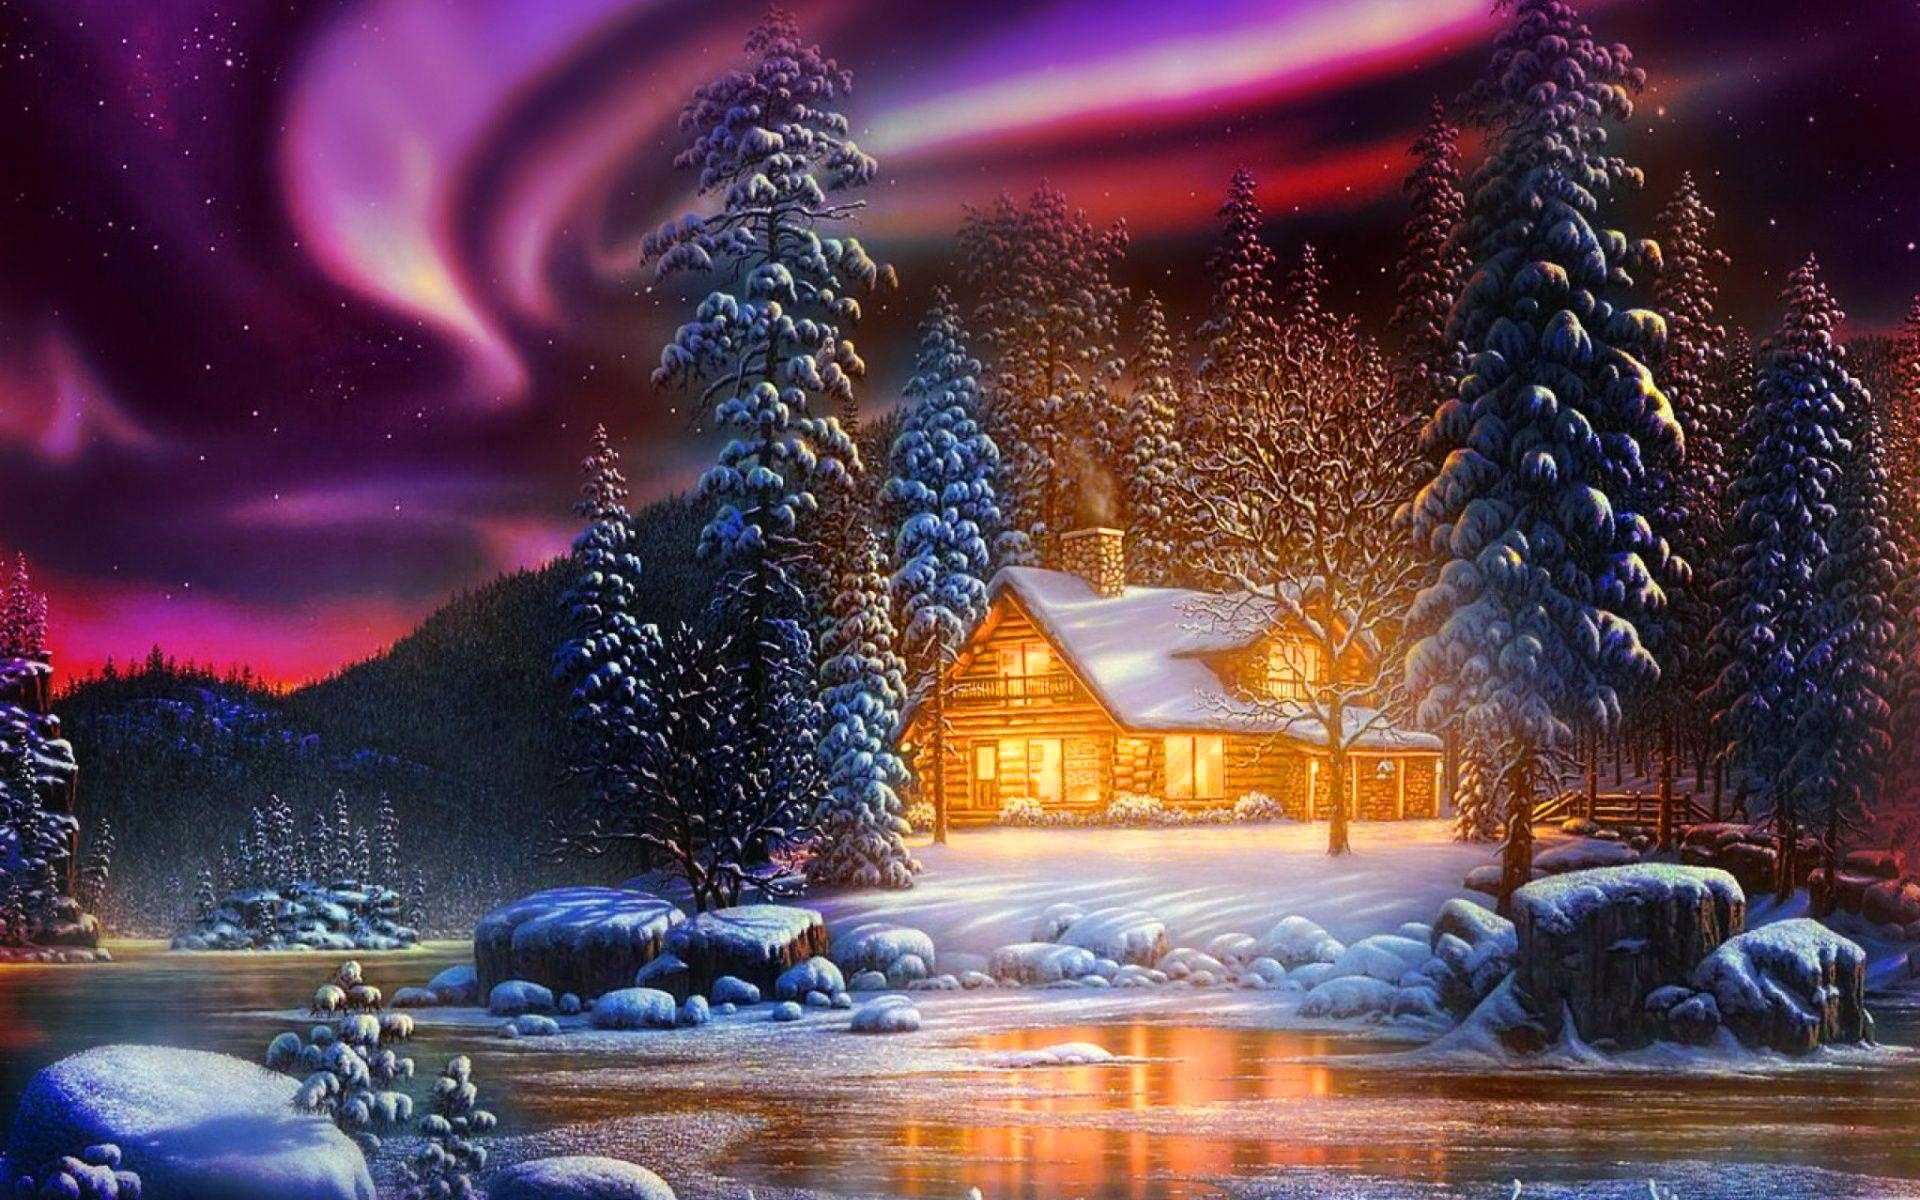 Winter Landscape Wallpaper HD Of Winter Scenes